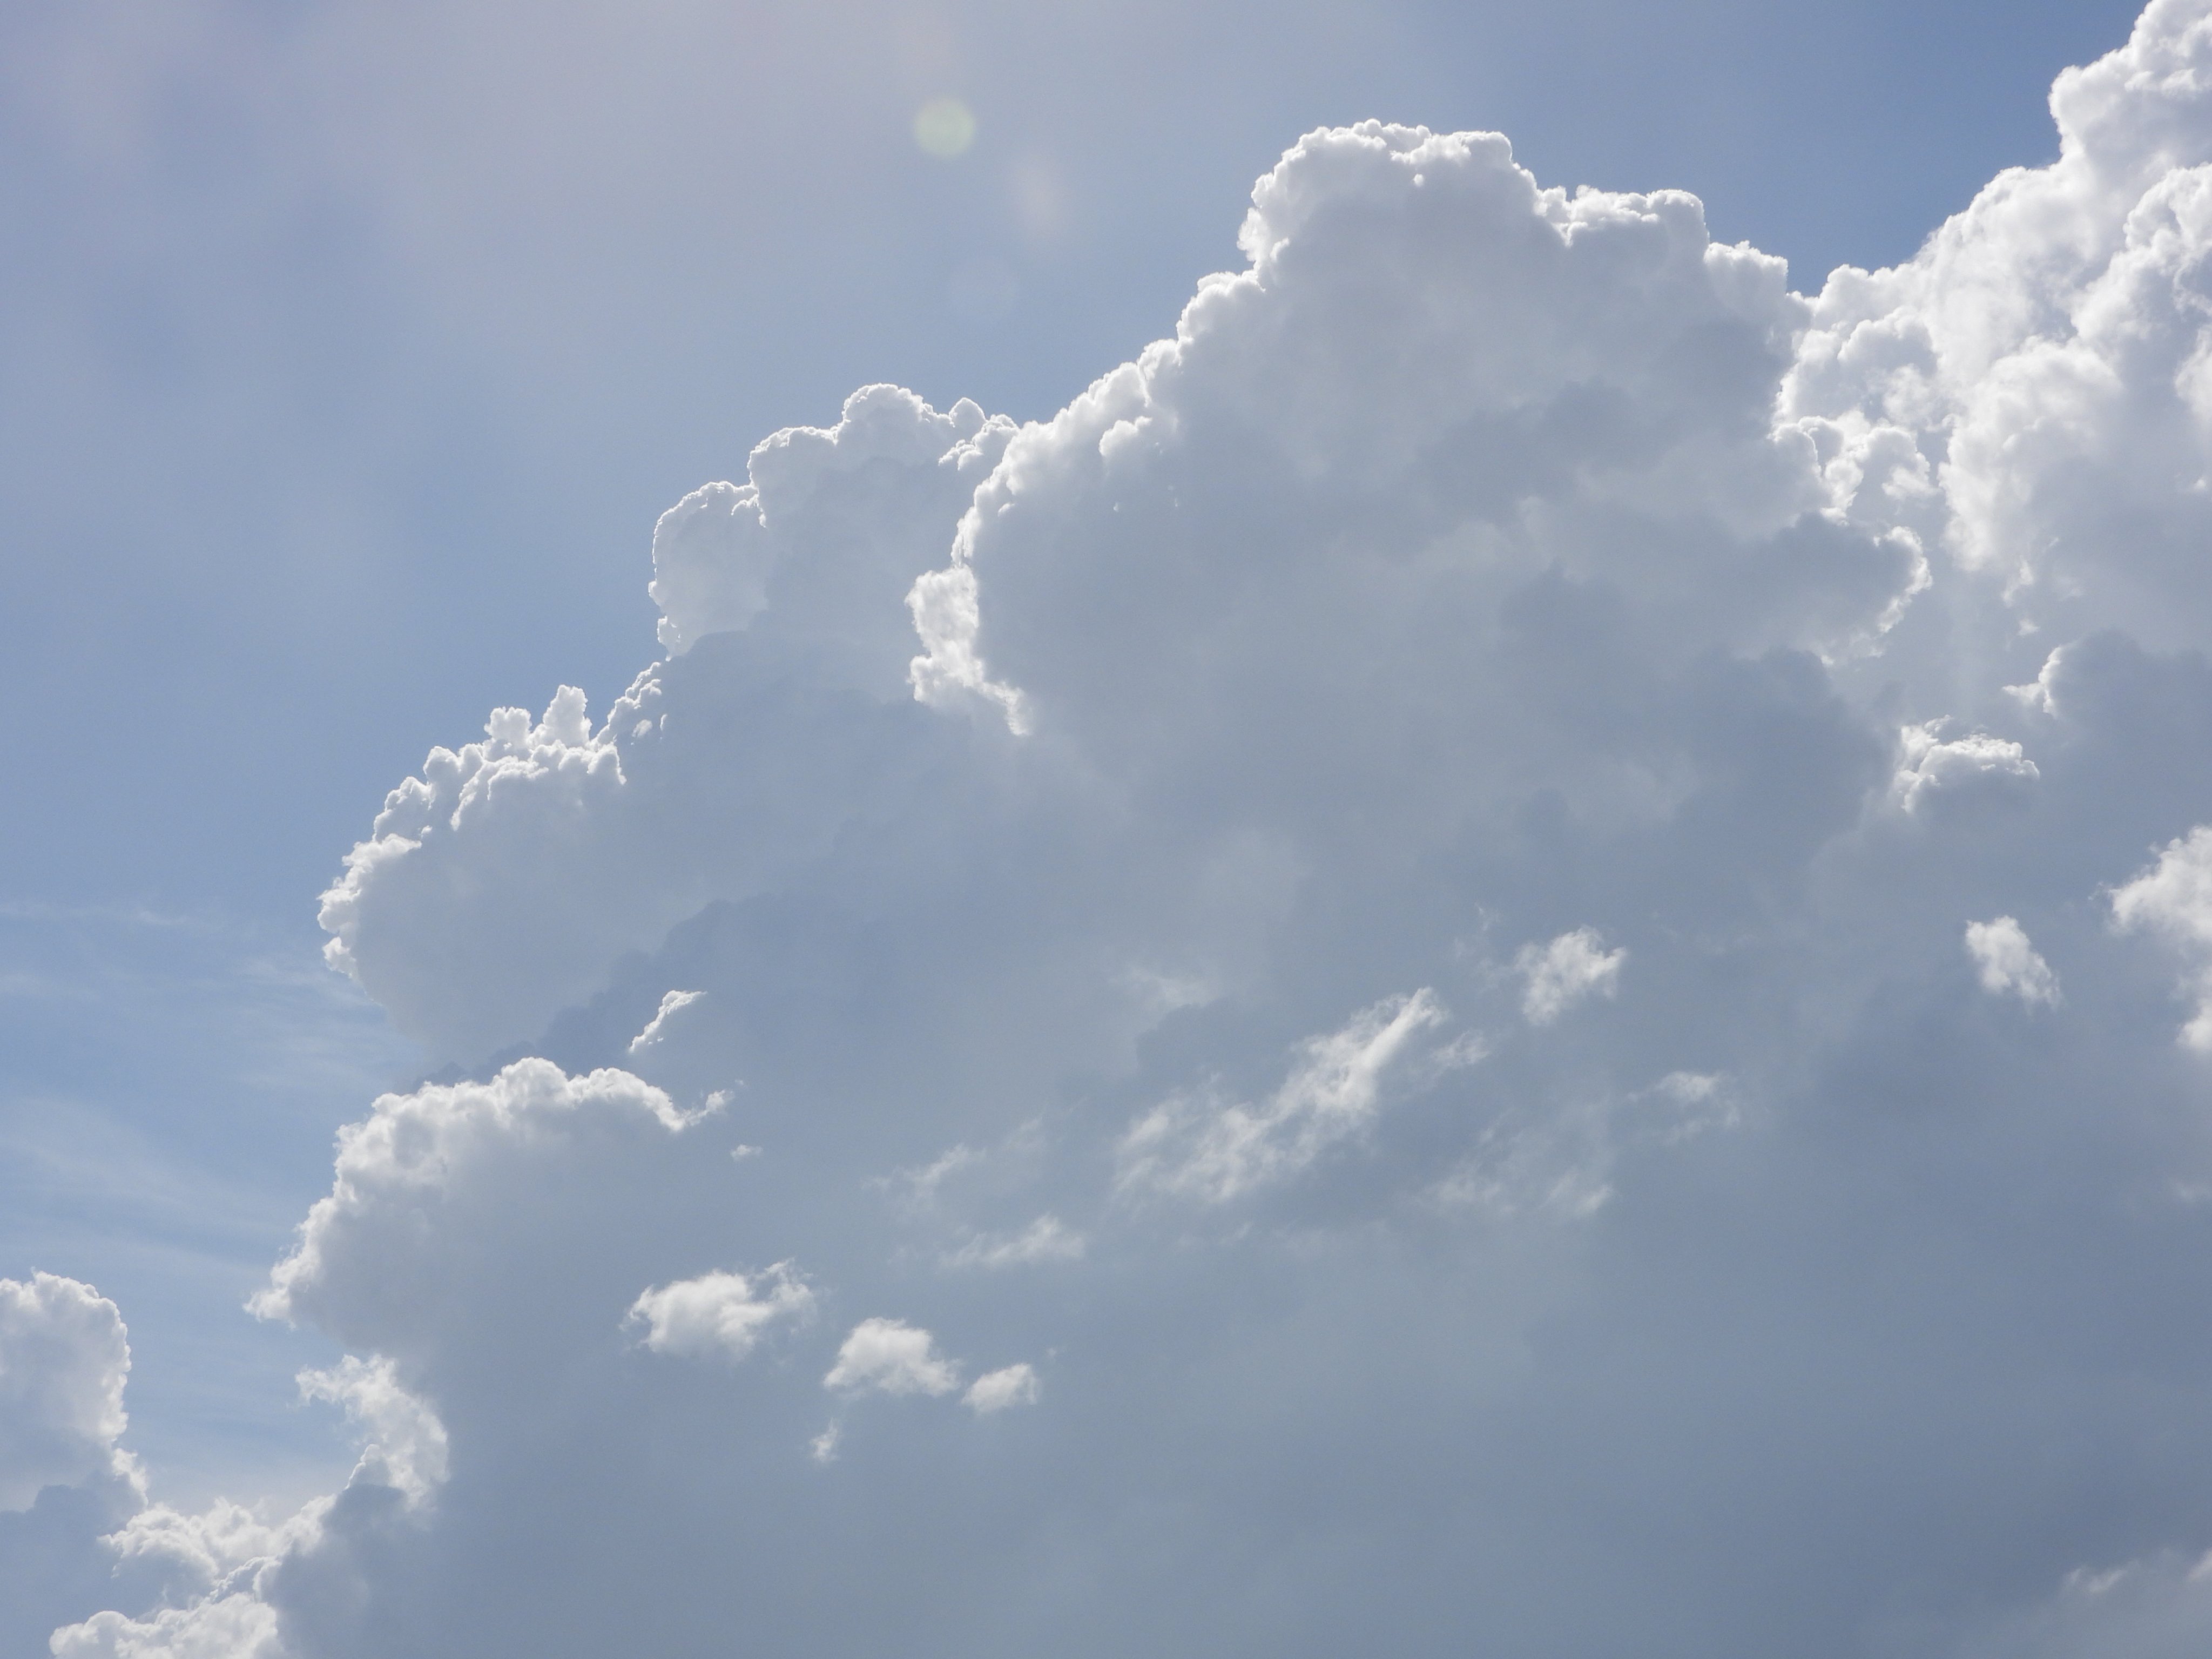 フリー素材あそび こういう雲もそろそろ見納めかな 空 雲 フリー素材あそびの写真 フリー素材 Freebie フリー写真 ロイヤリティフリー T Co G1qf2xyuz8 Twitter